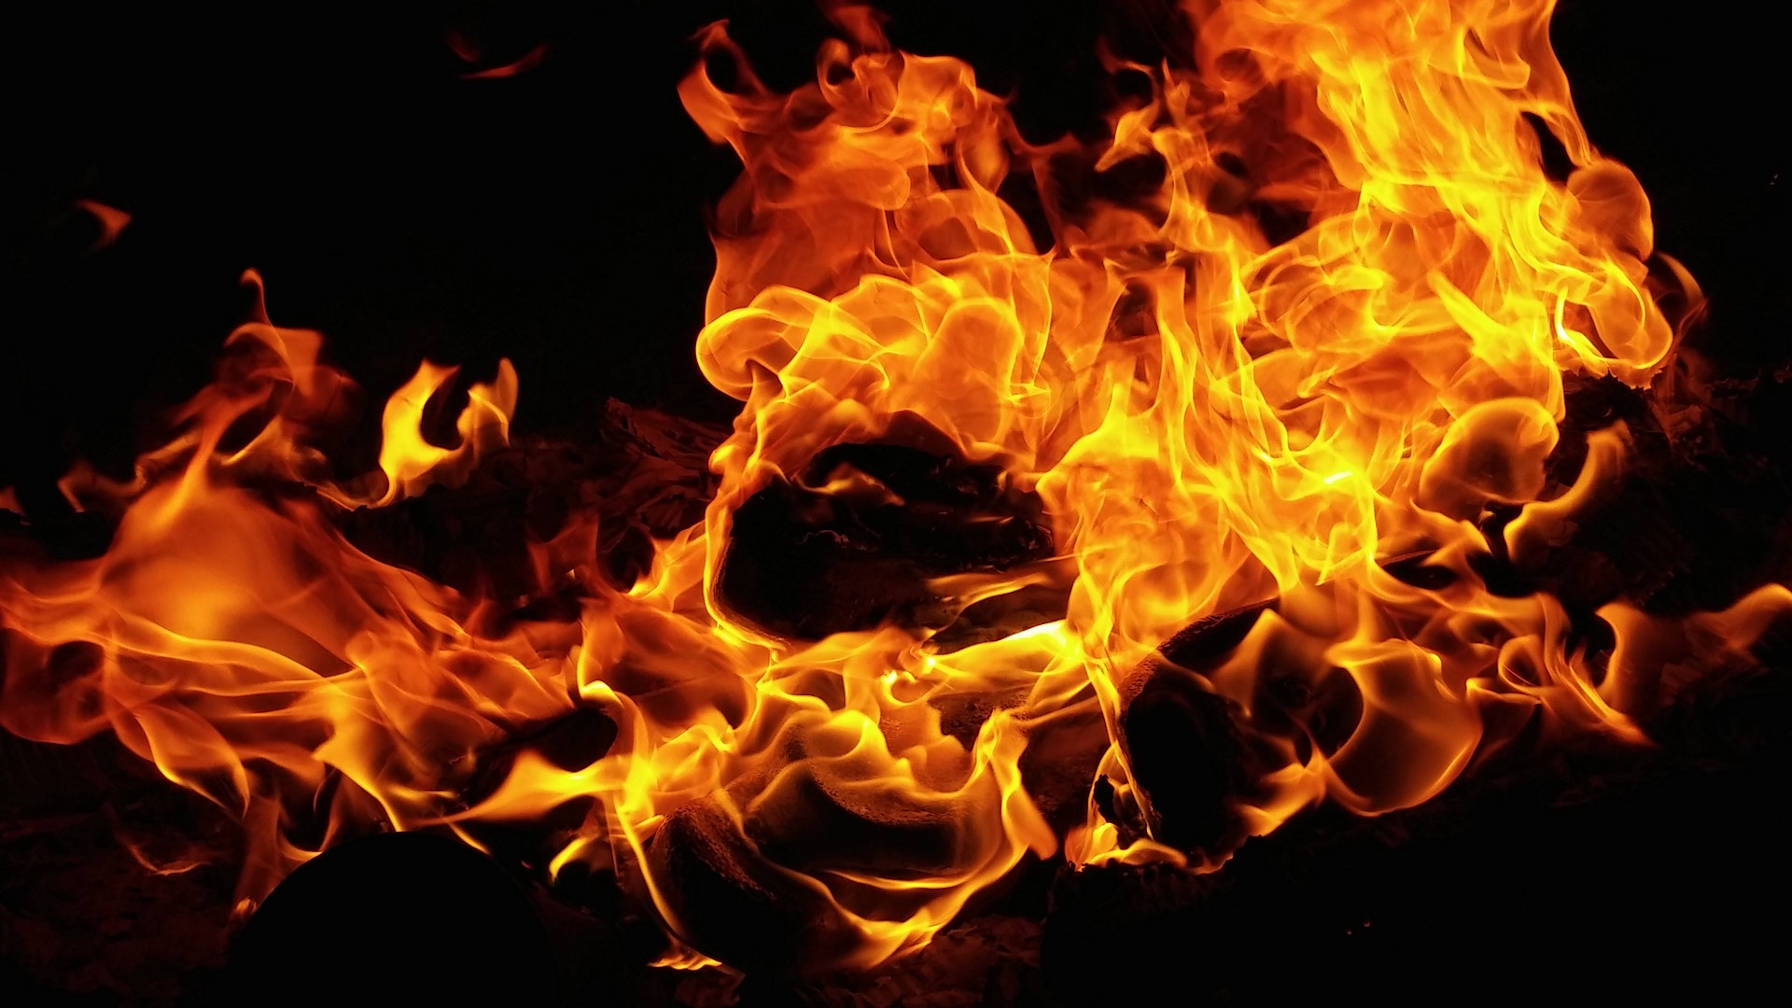 Image of orange flames set against a black background.